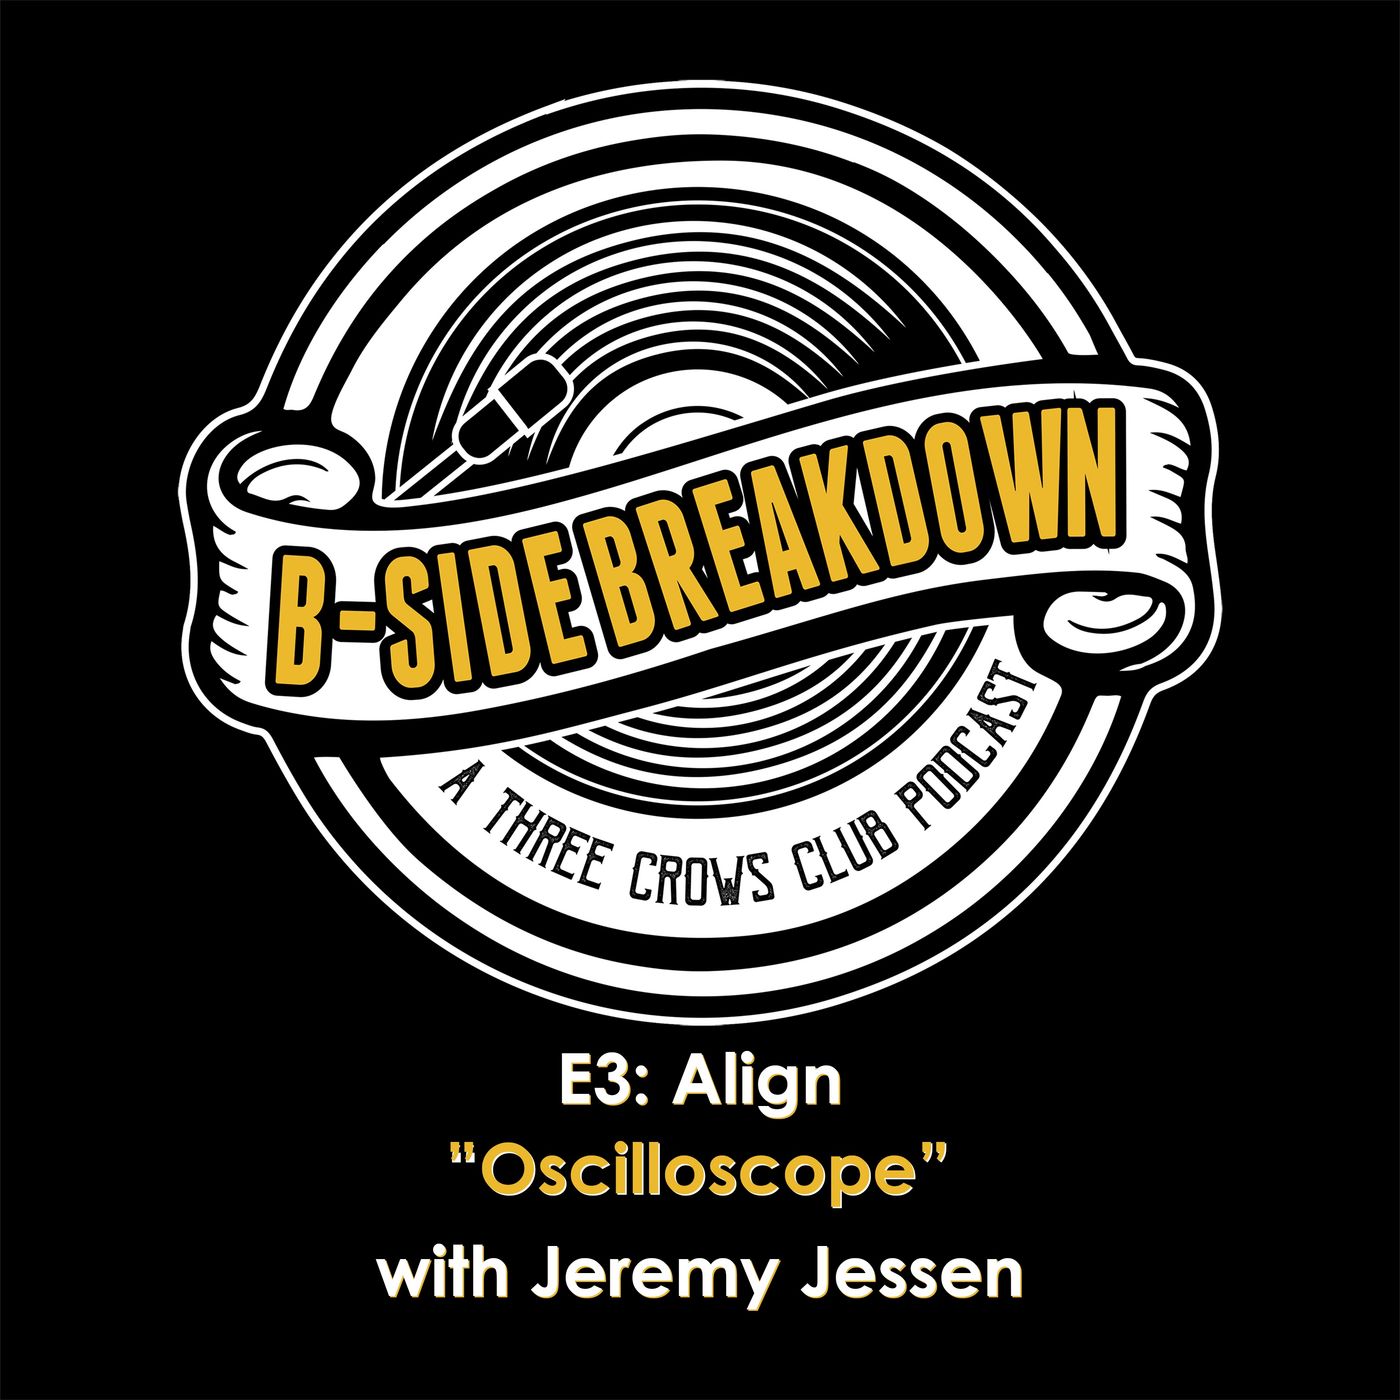 E3: "Oscilloscope" by Align with Jeremy Jessen